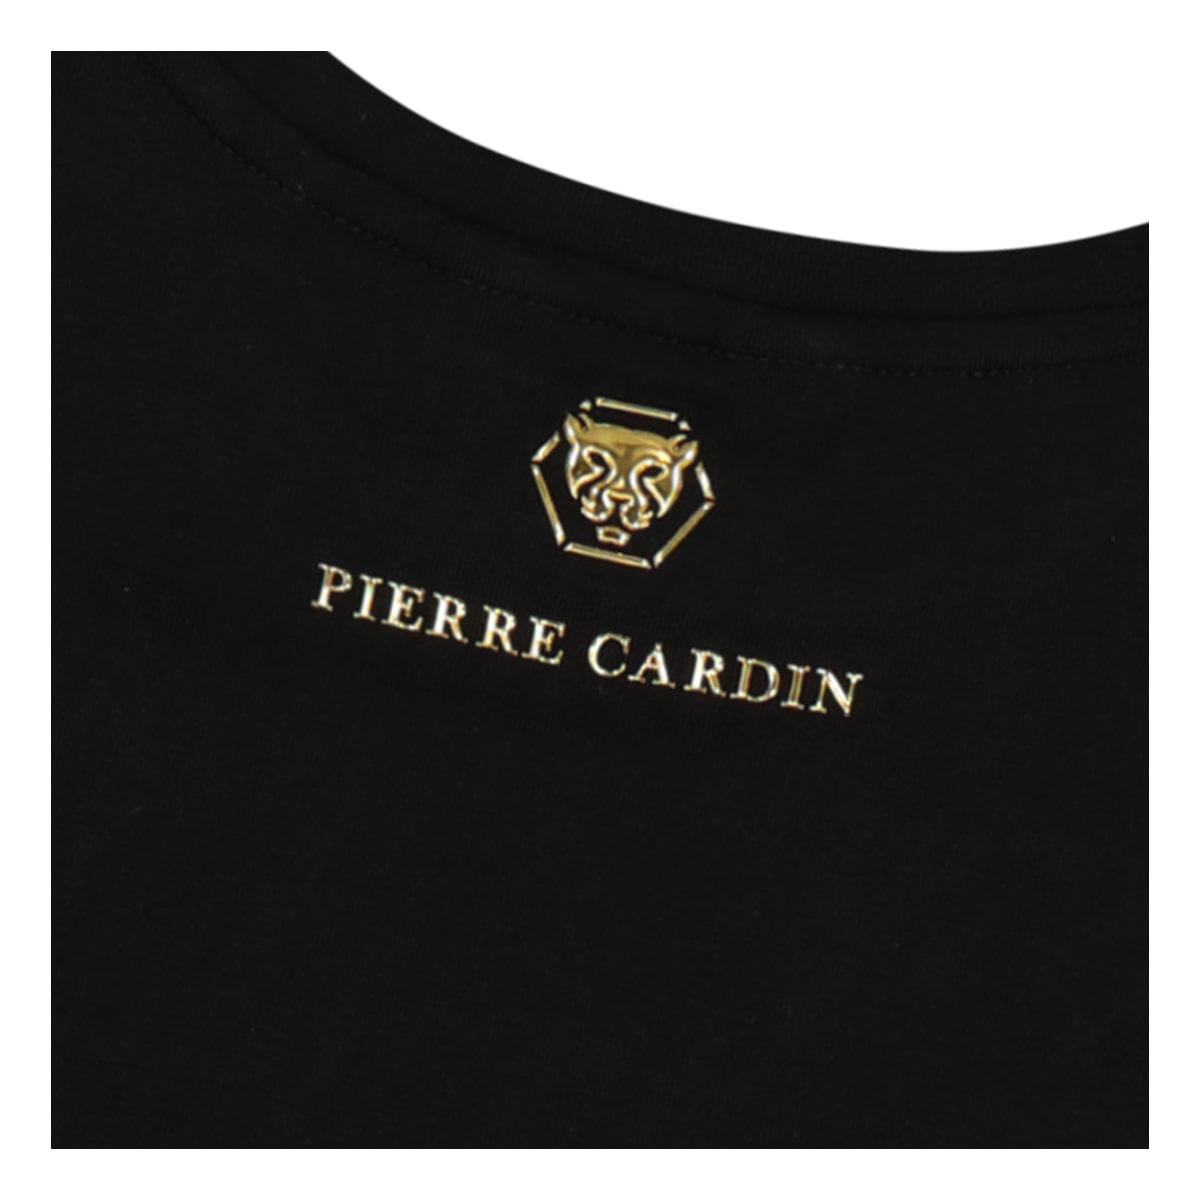 חולצת טי שרט PIERRE CARDIN שאגת פנתר לילדים